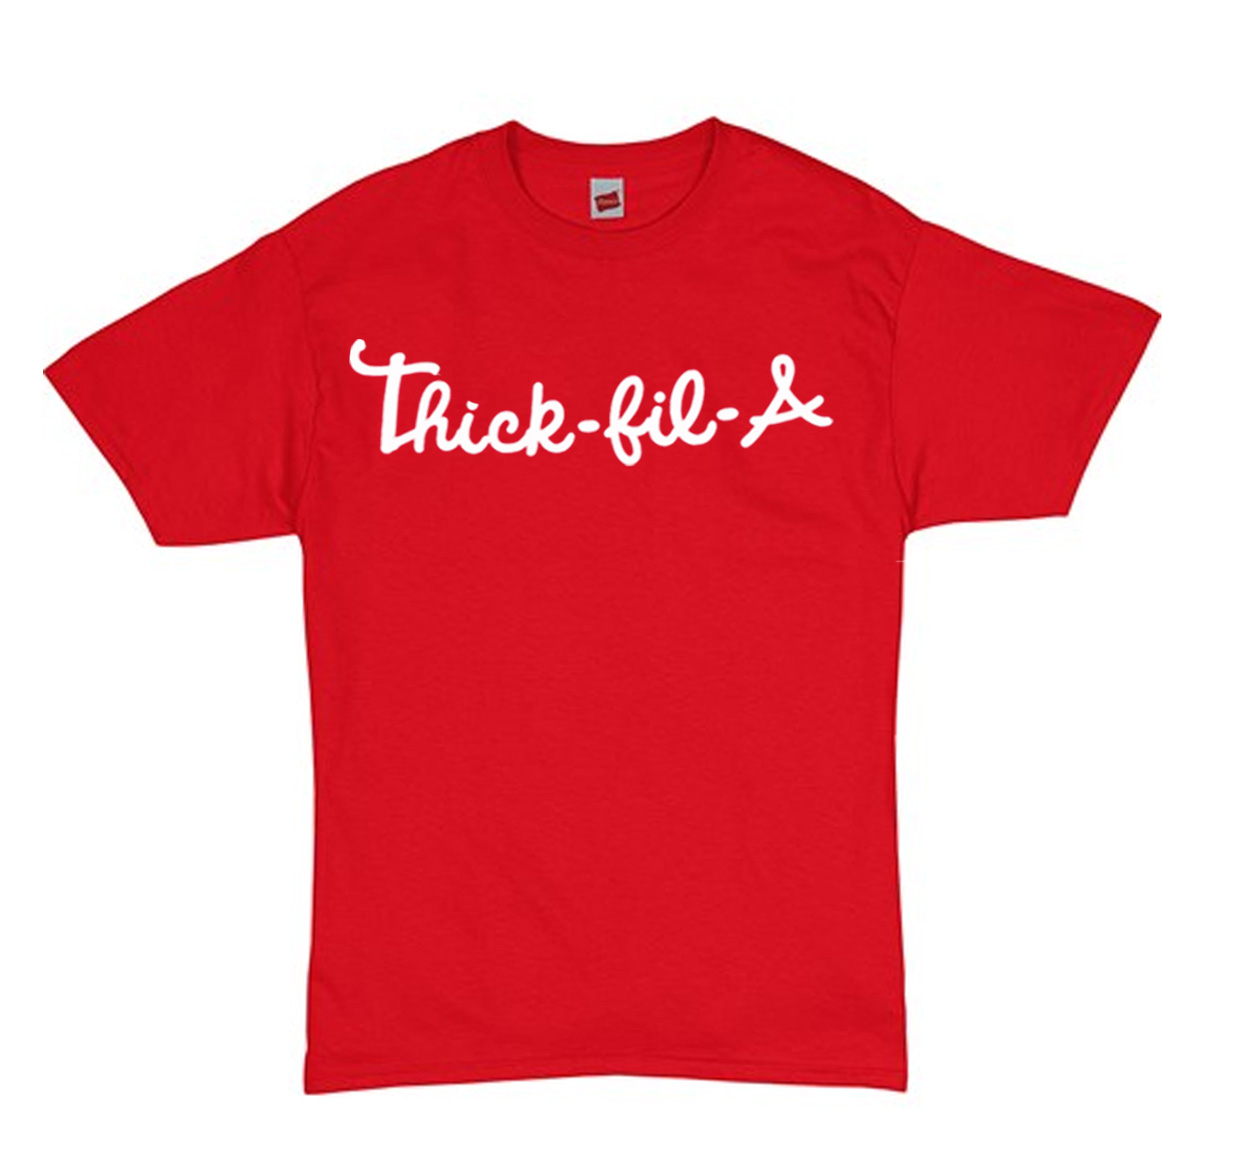 Thick-Fil-A Shirt